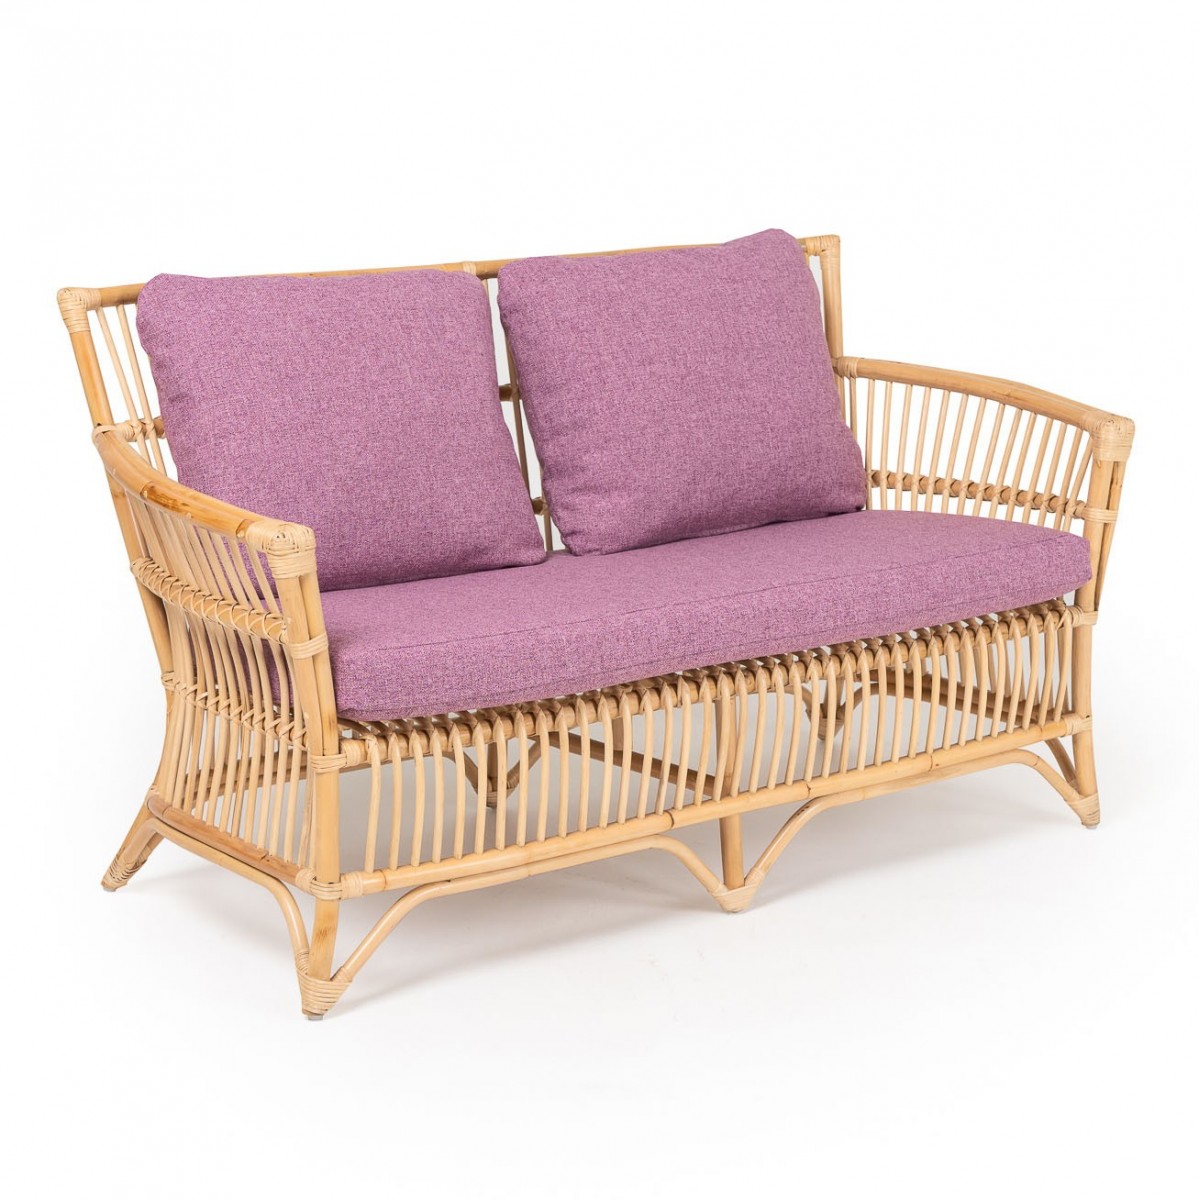 Natural rattan wicker design sofa. Unique products by Rosa Splendiani